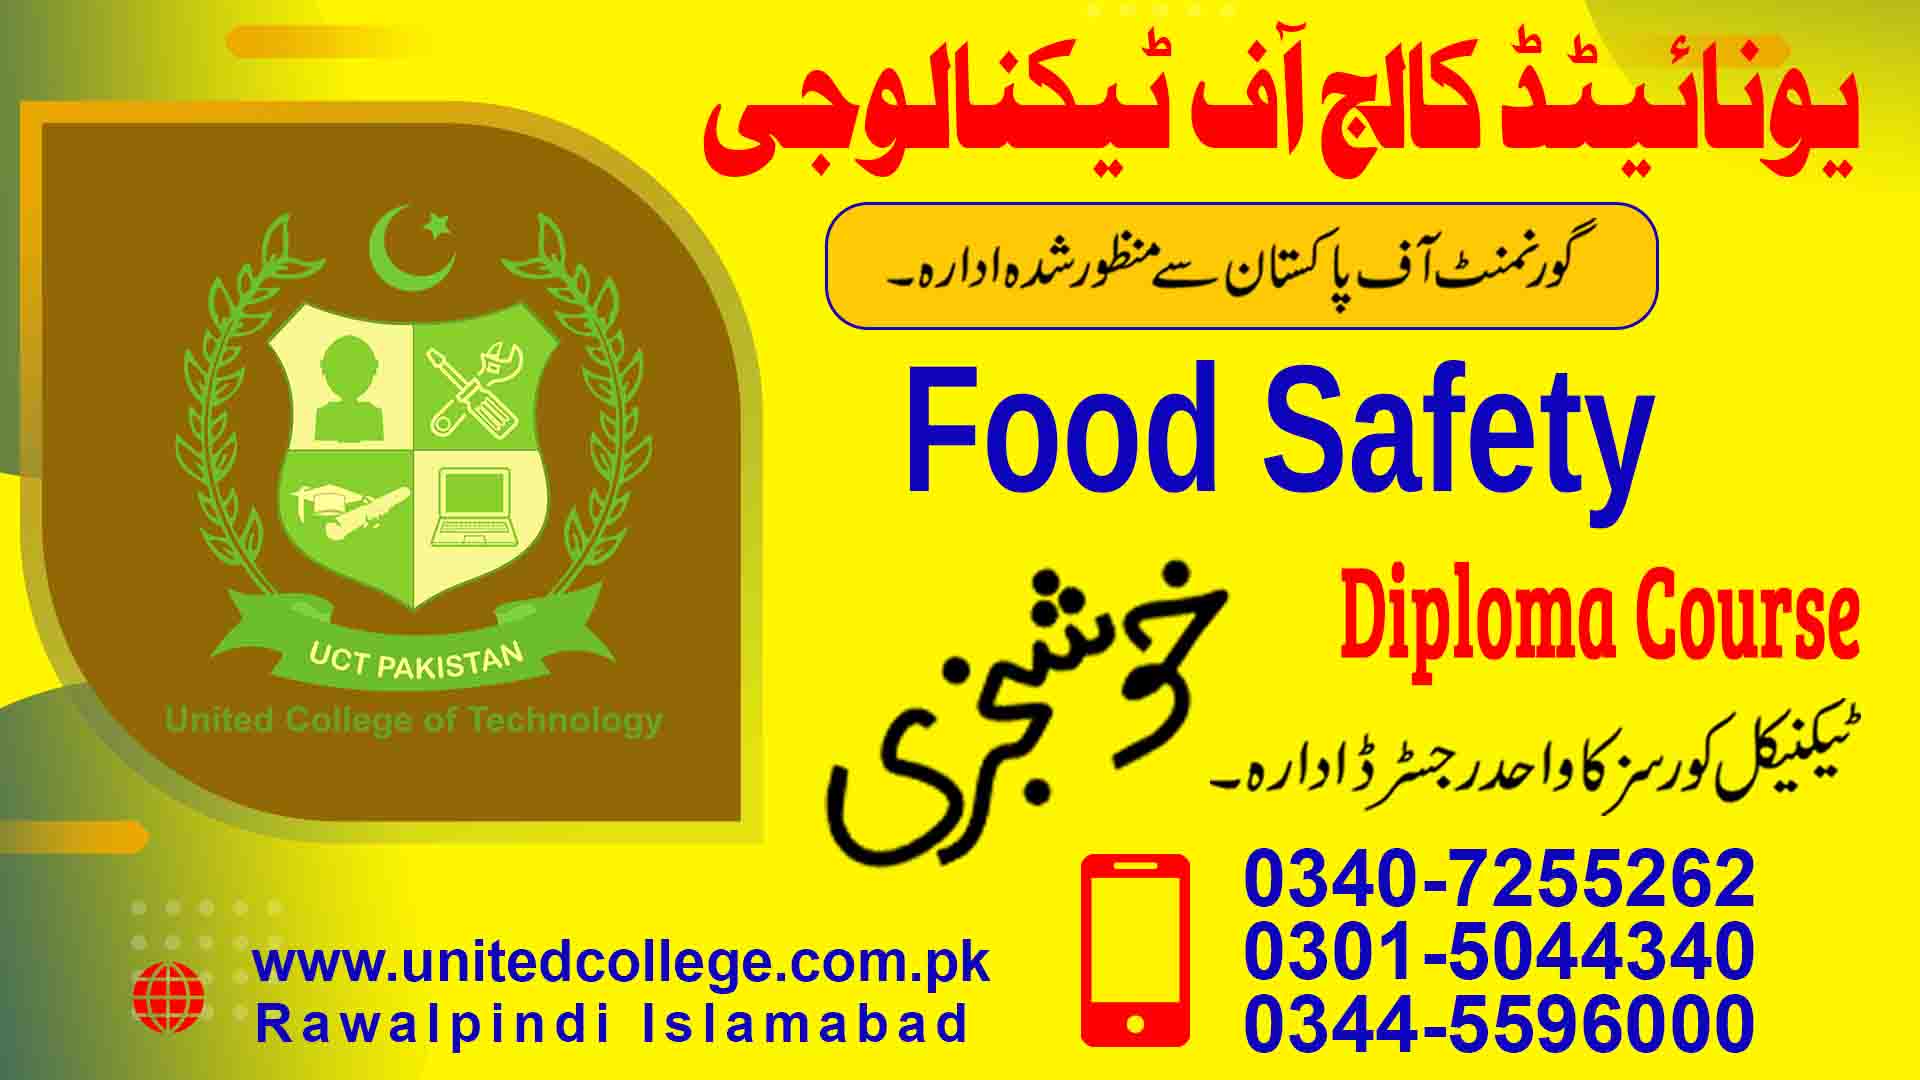 FOOD SAFETY COURSE IN RAWALPINDI ISLAMABAD PAKISTAN